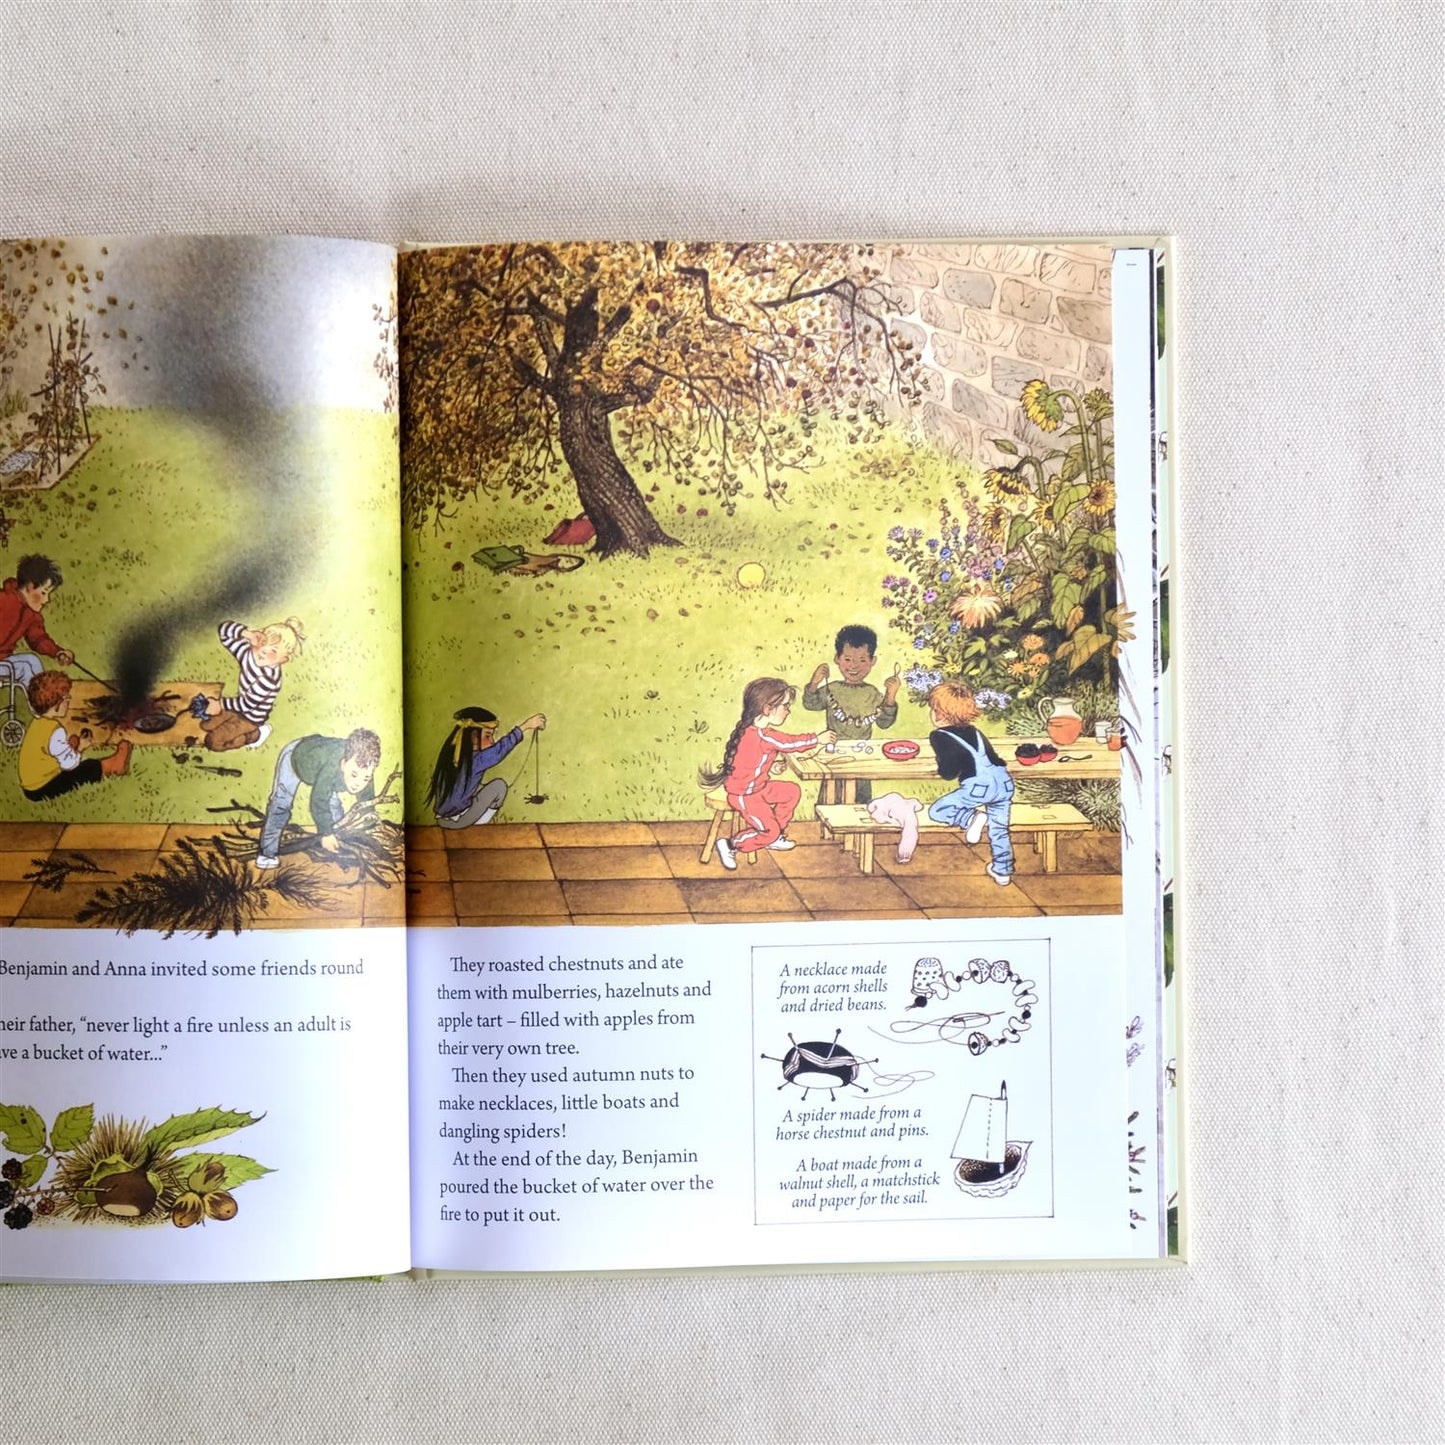 A Year in our New Garden - bok av Gerda Muller